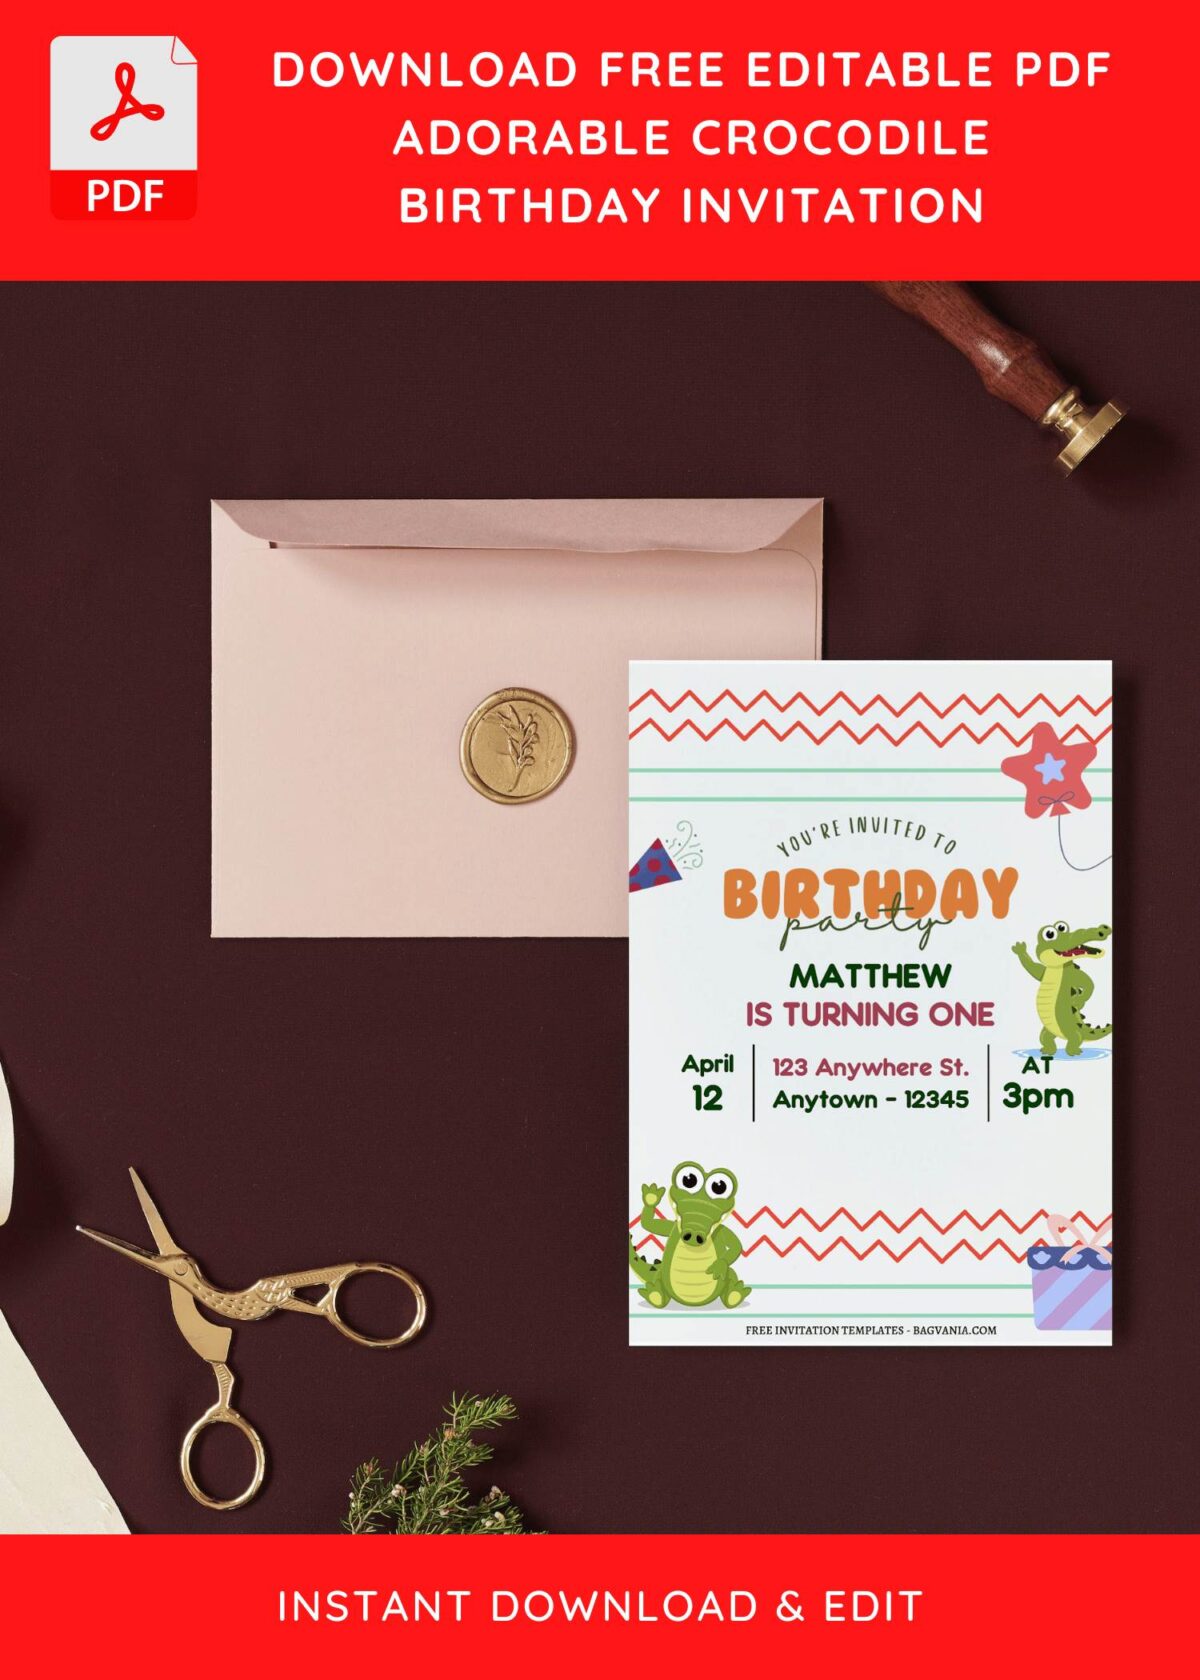 (Free Editable PDF) Cute Alligator Kids Birthday Invitation Templates I